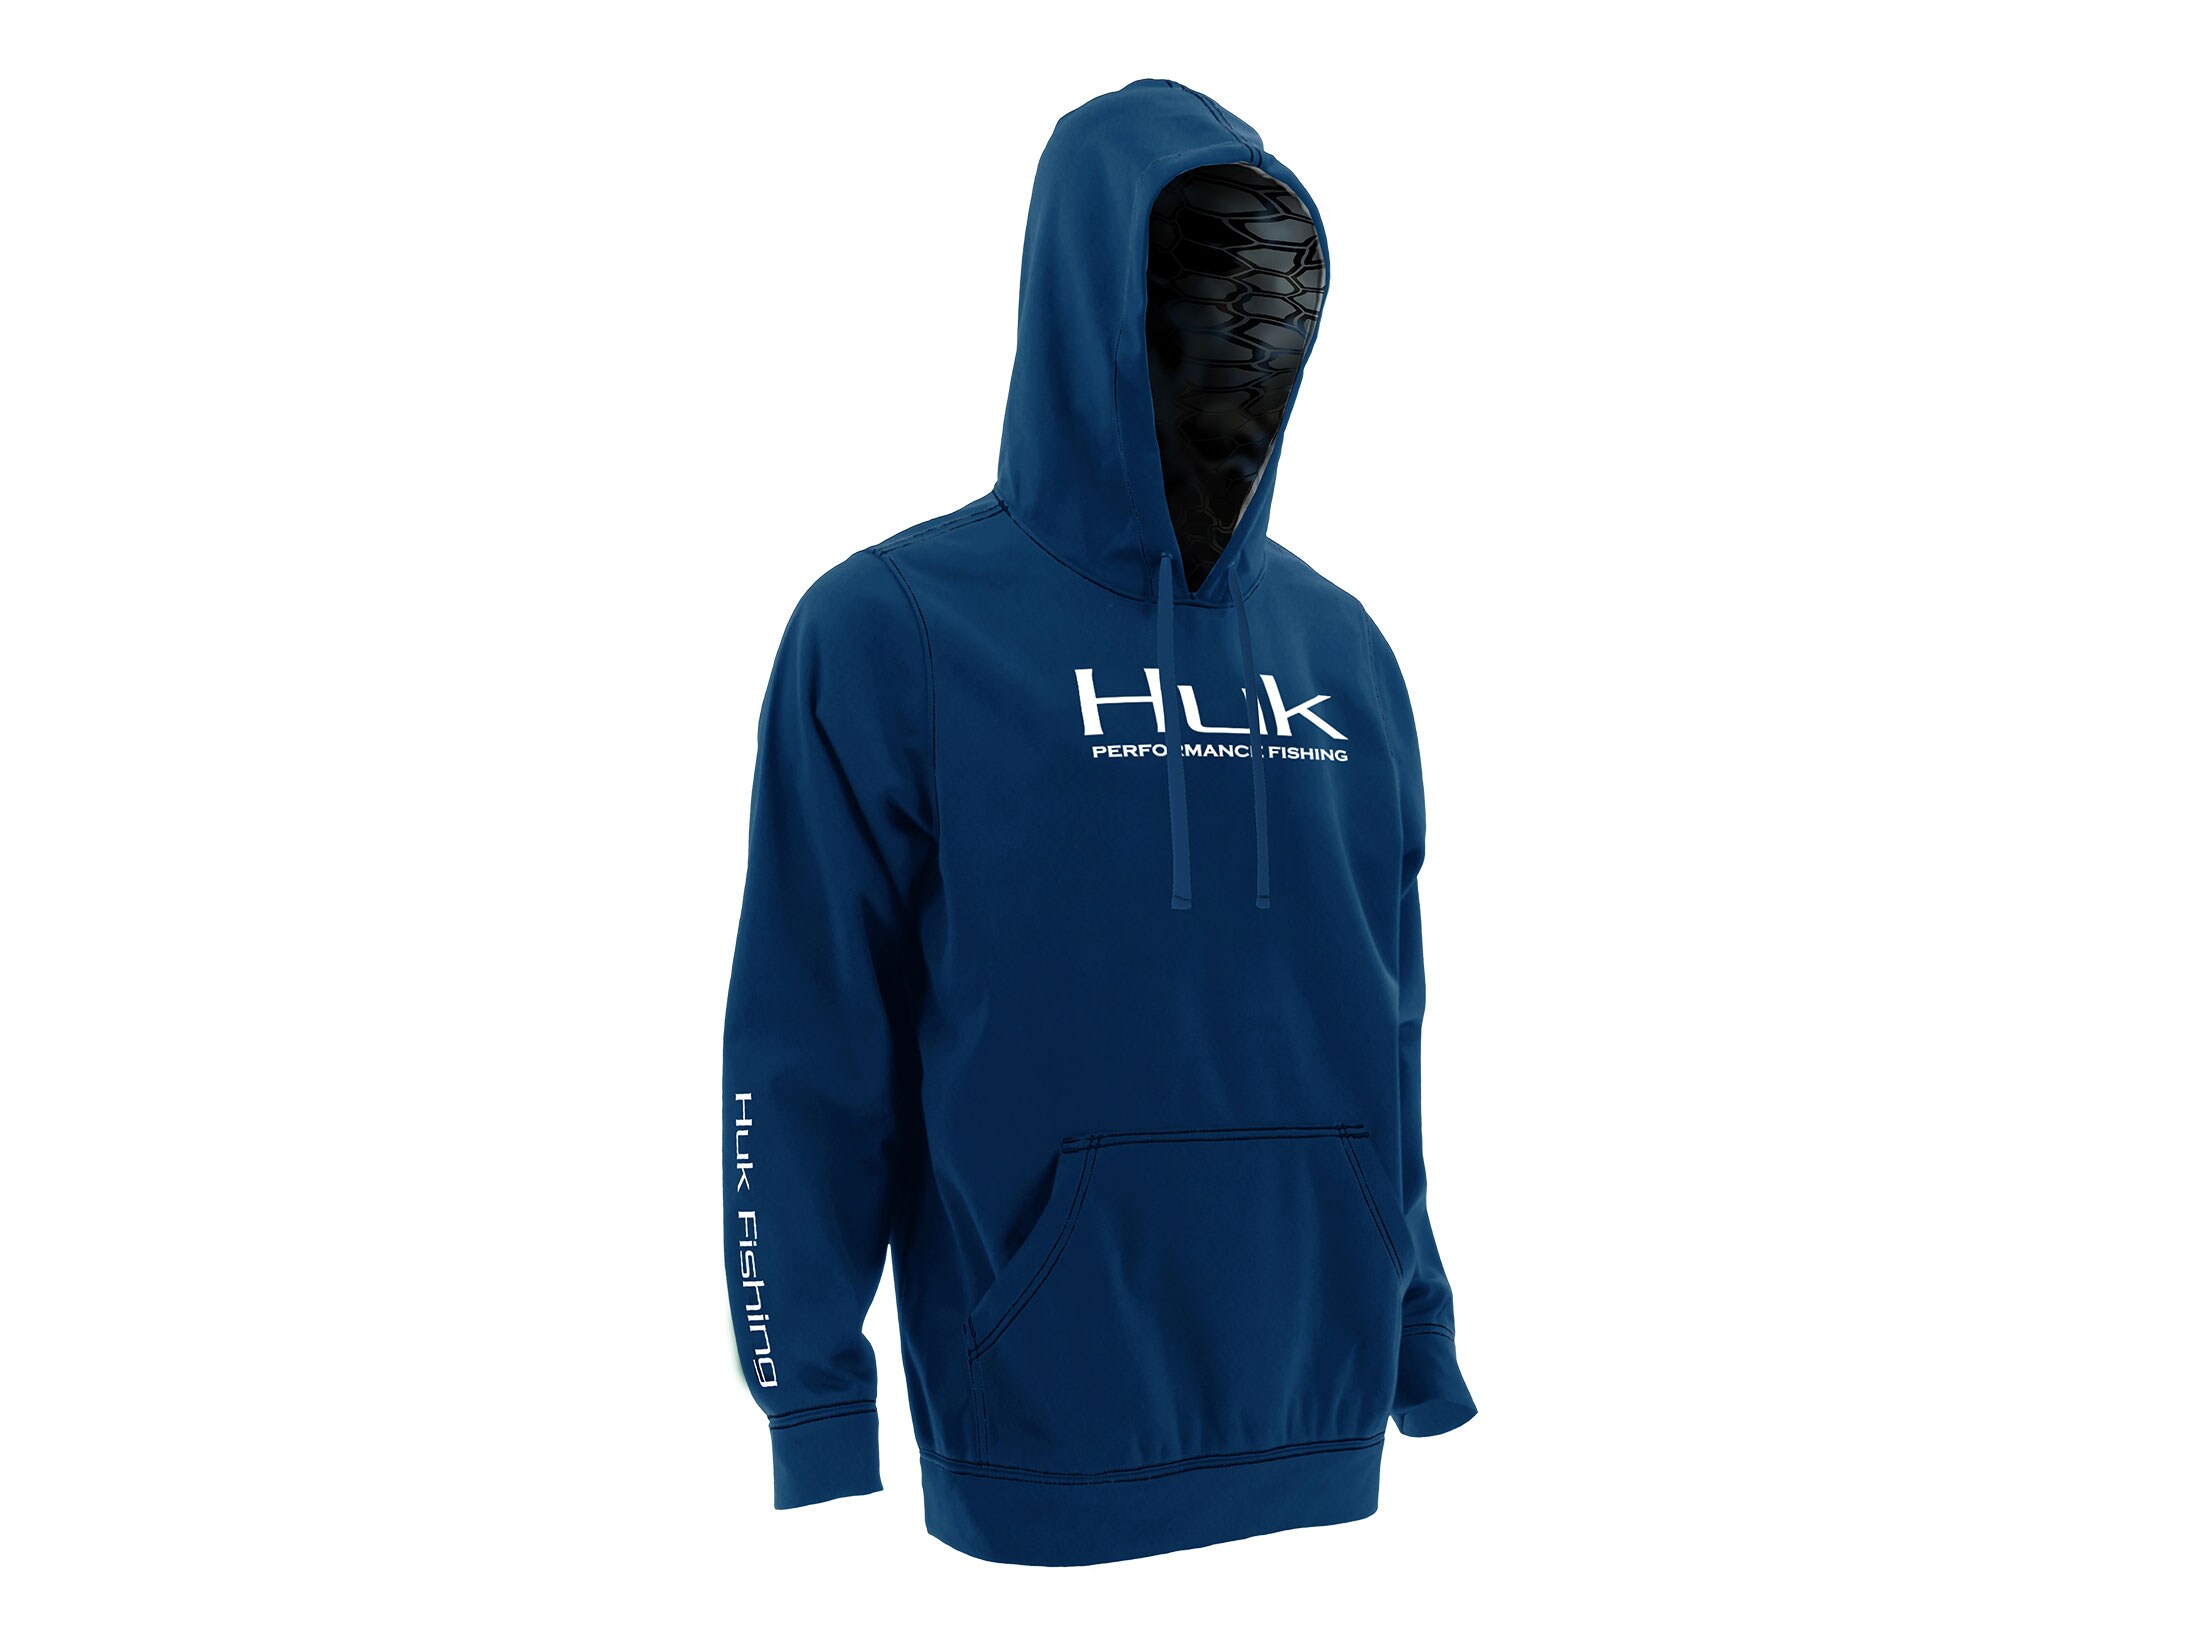 huk hoodie sale